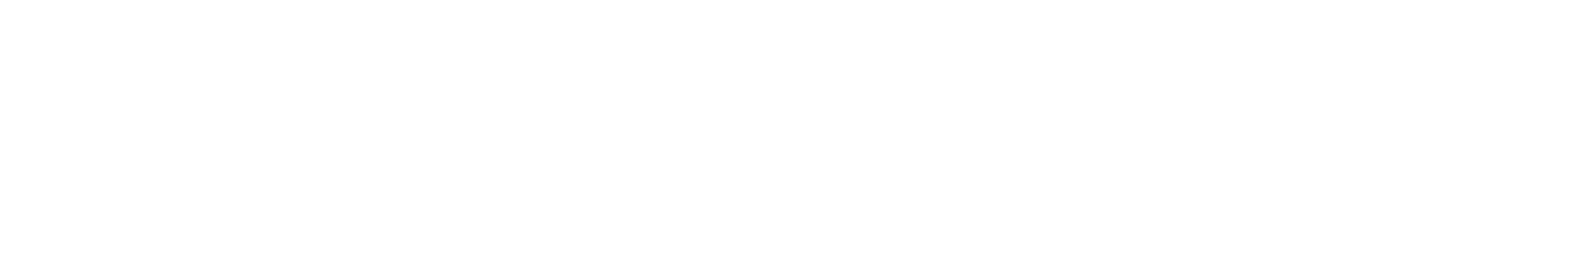 Community Health Systems
 logo grand pour les fonds sombres (PNG transparent)